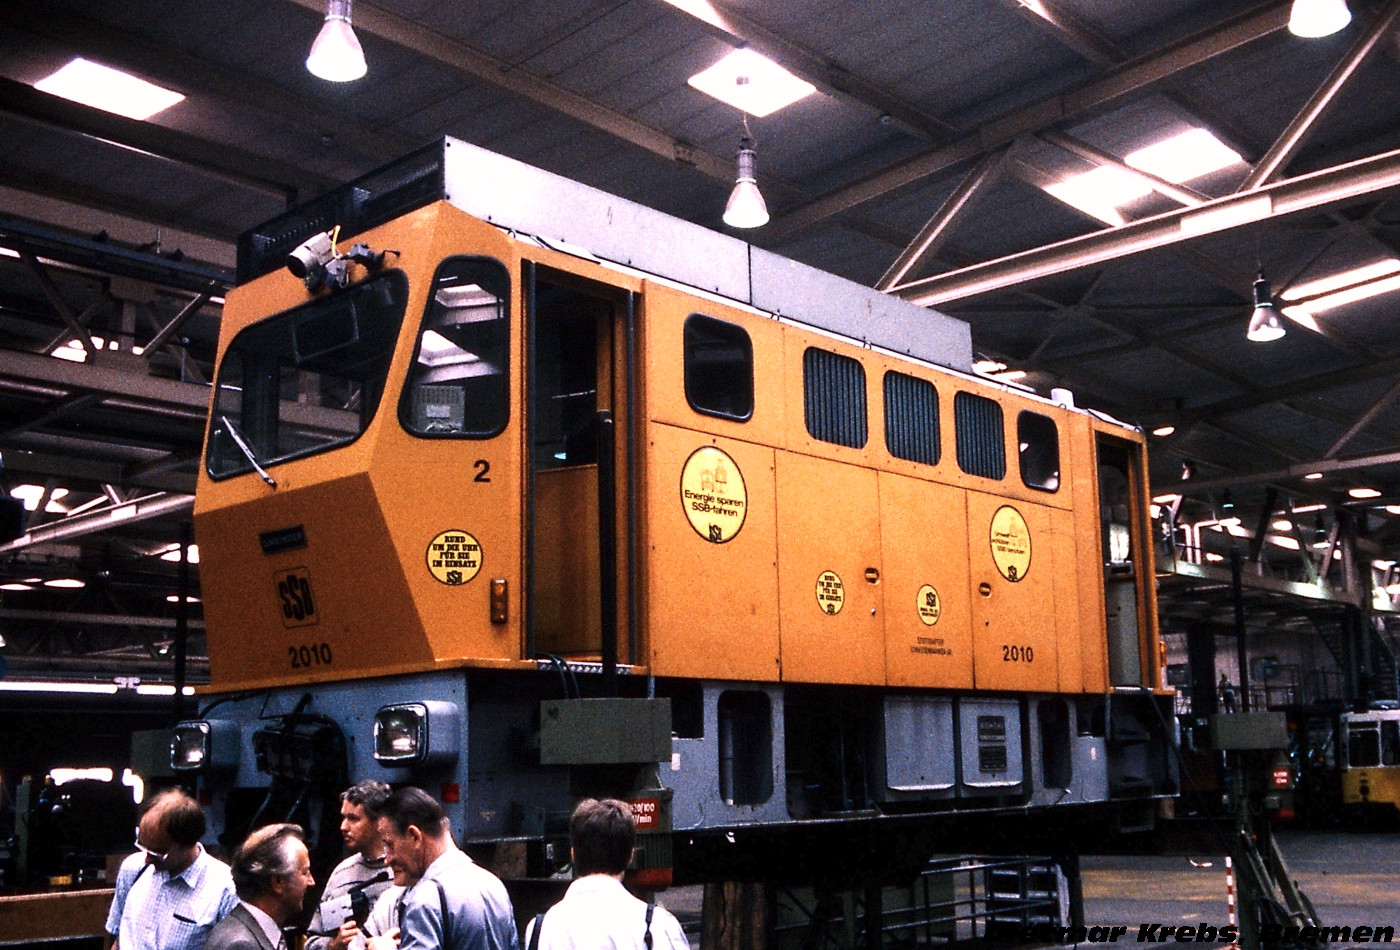 4-axle service Locomotive #2010